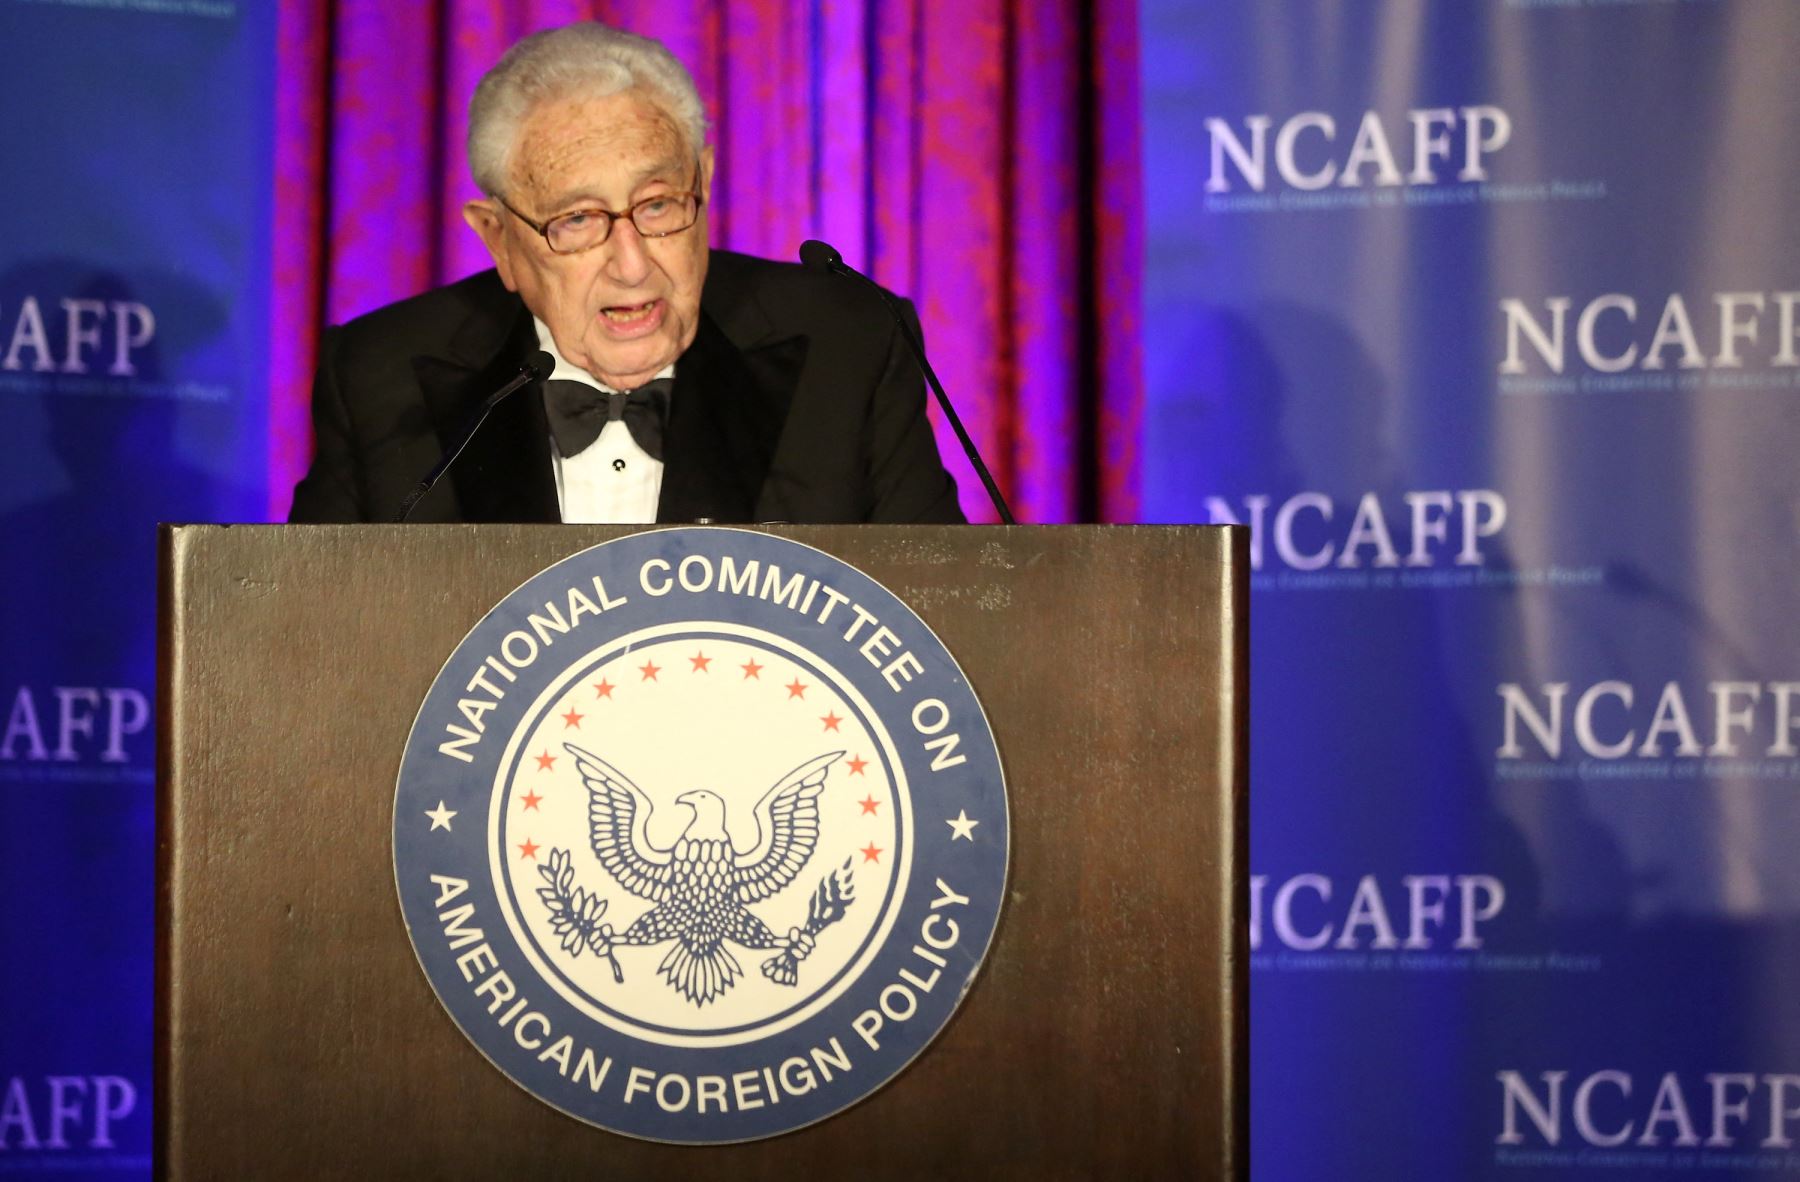 El ex Secretario de Estado de los Estados Unidos y copresidente honorario de la NCAFP, Henry A. Kissinger, habla en el escenario en la Cena de Gala 2016 del Comité Nacional de Política Exterior Estadounidense el 19 de octubre de 2016.
Foto: AFP